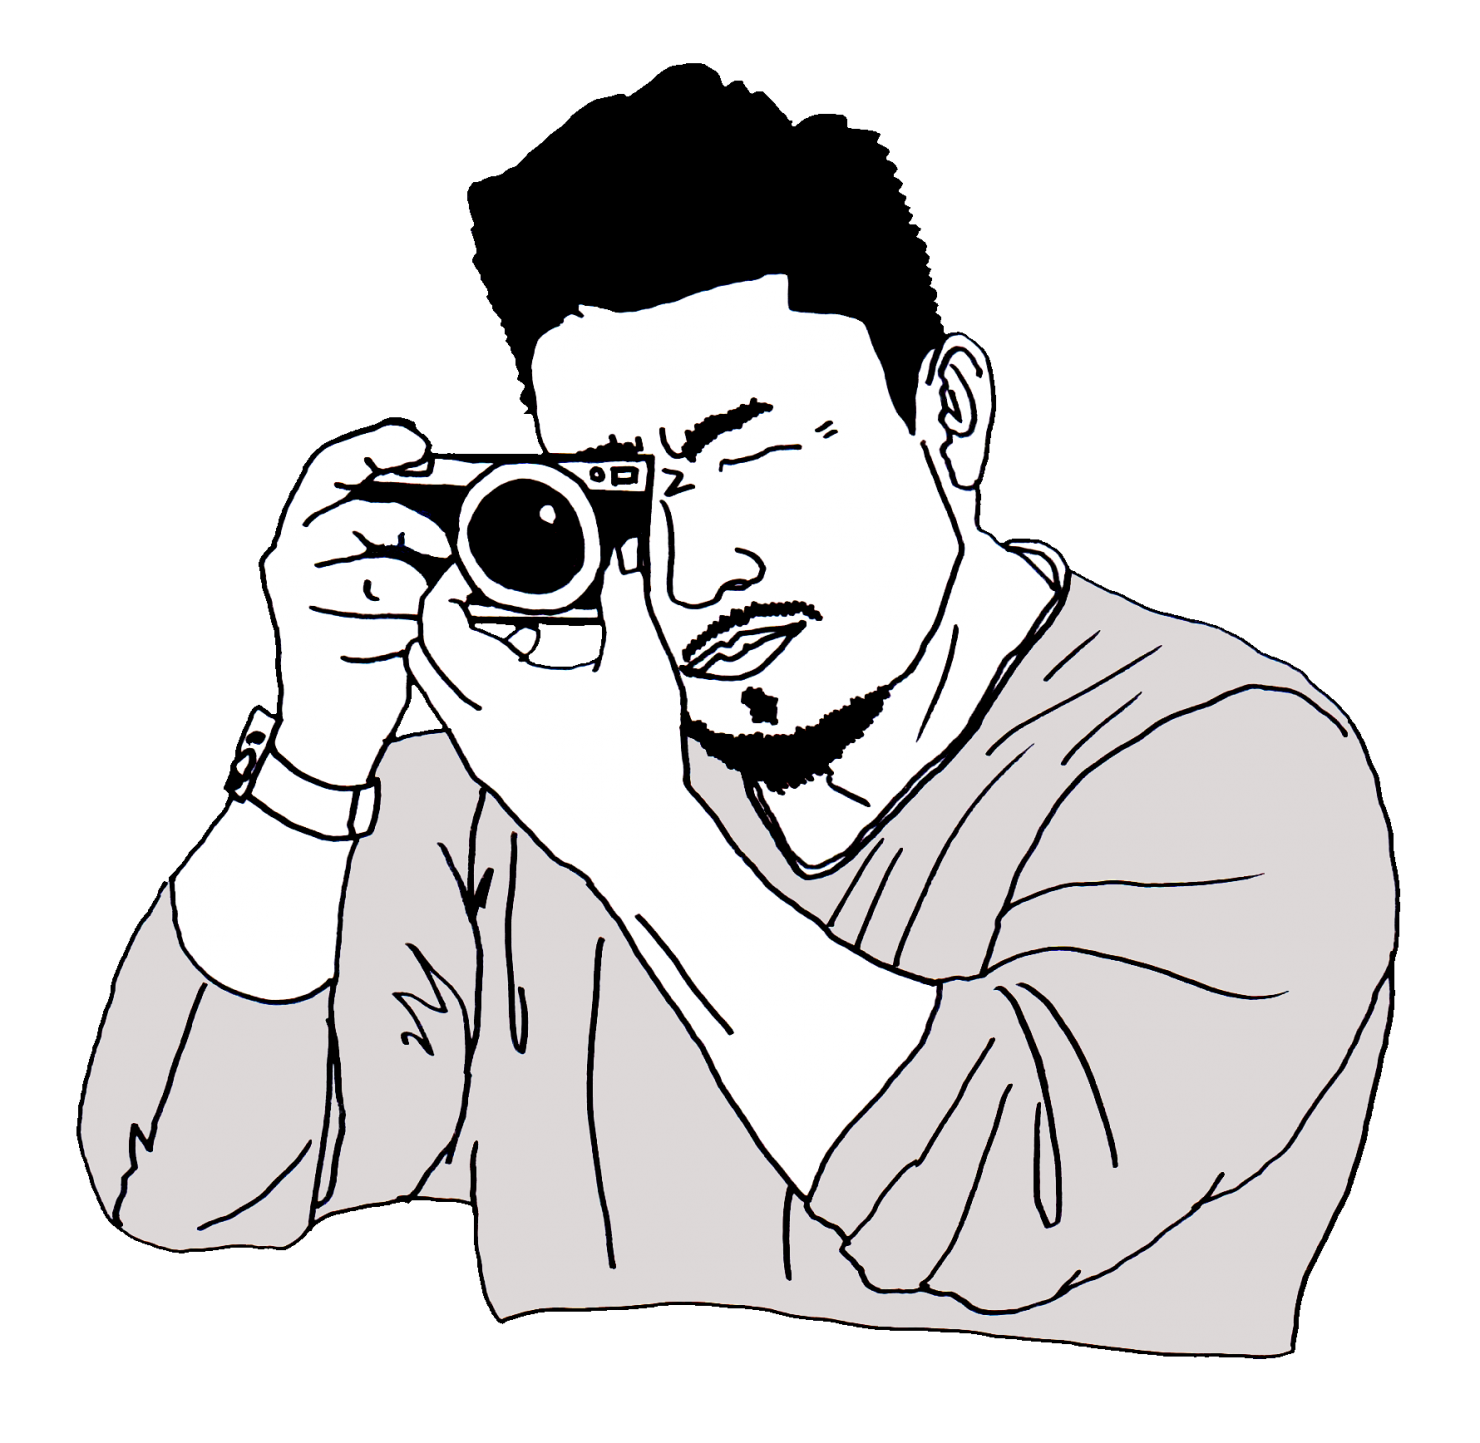 髭のカメラマンの白黒イラスト画像横